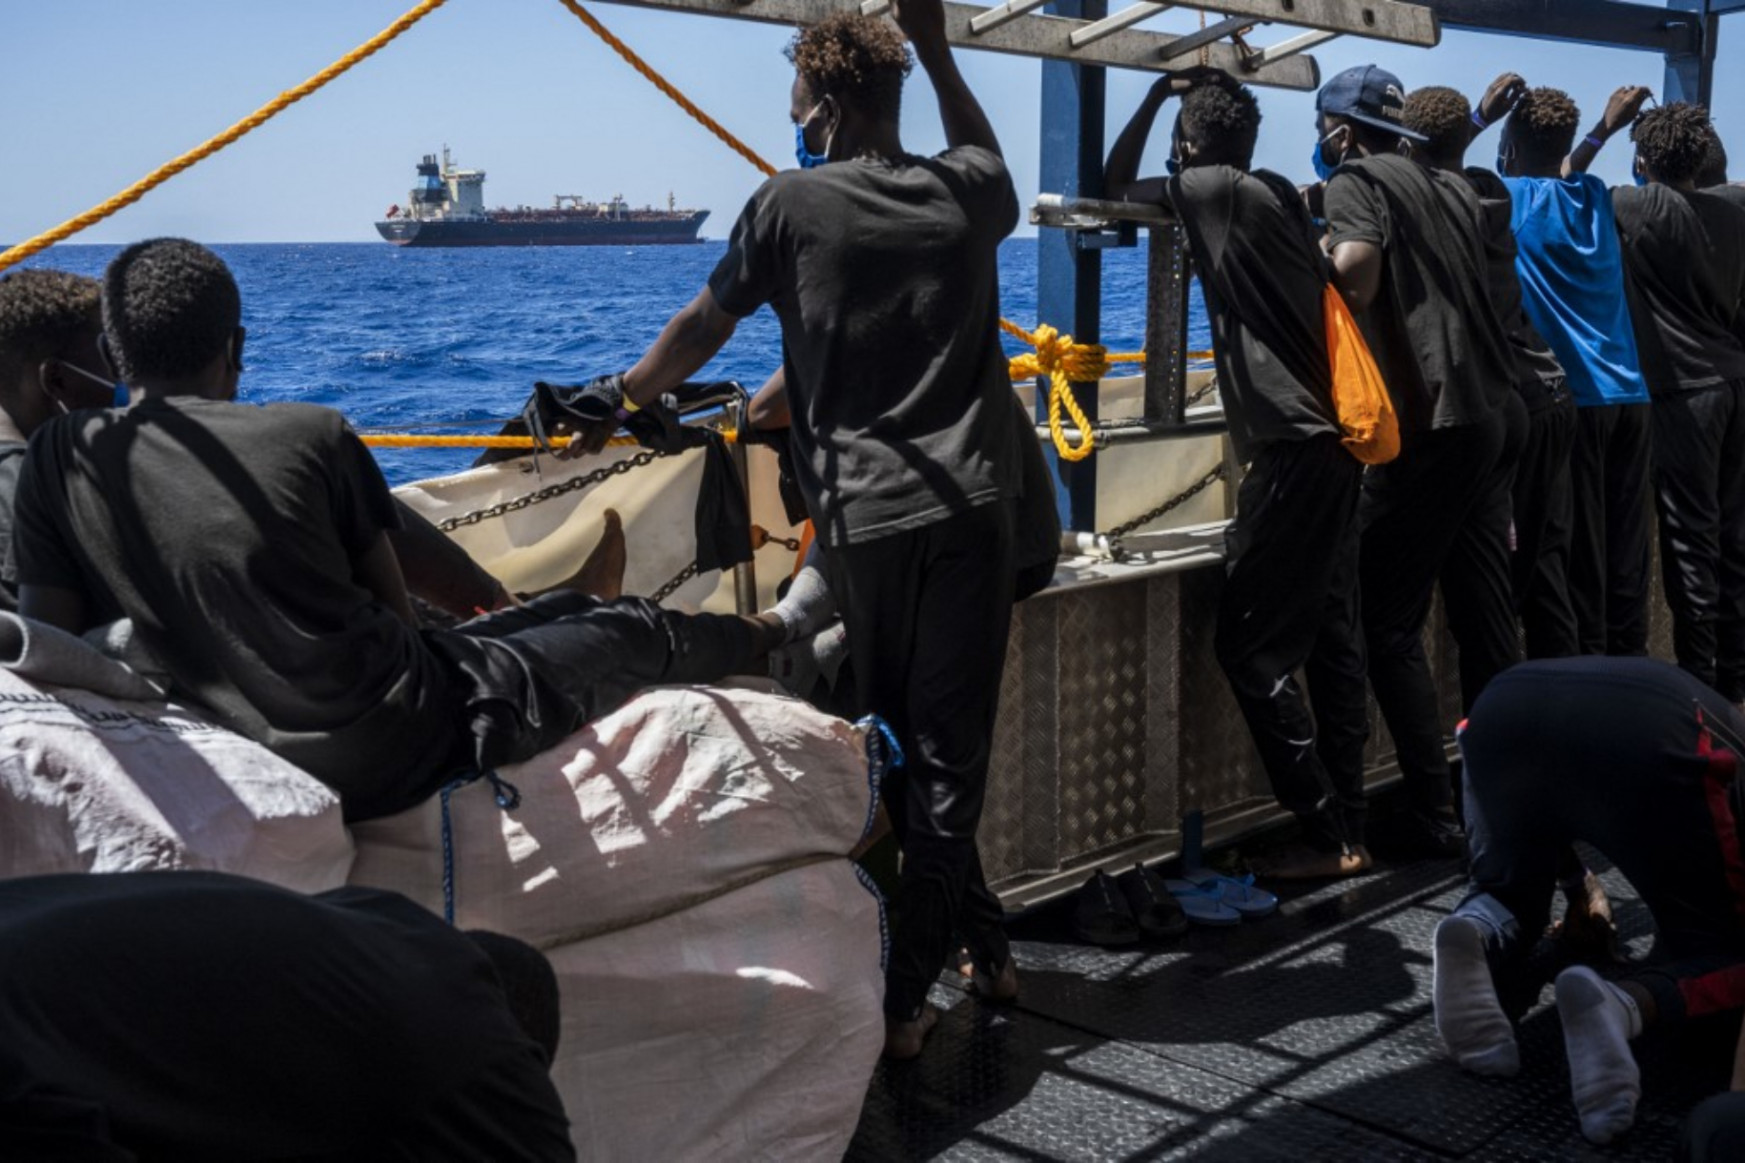 Egy dán hajózási cég 125 ezer eurót fizetett egy segélyszervezetnek, de nem üzleteltek a menekültekkel